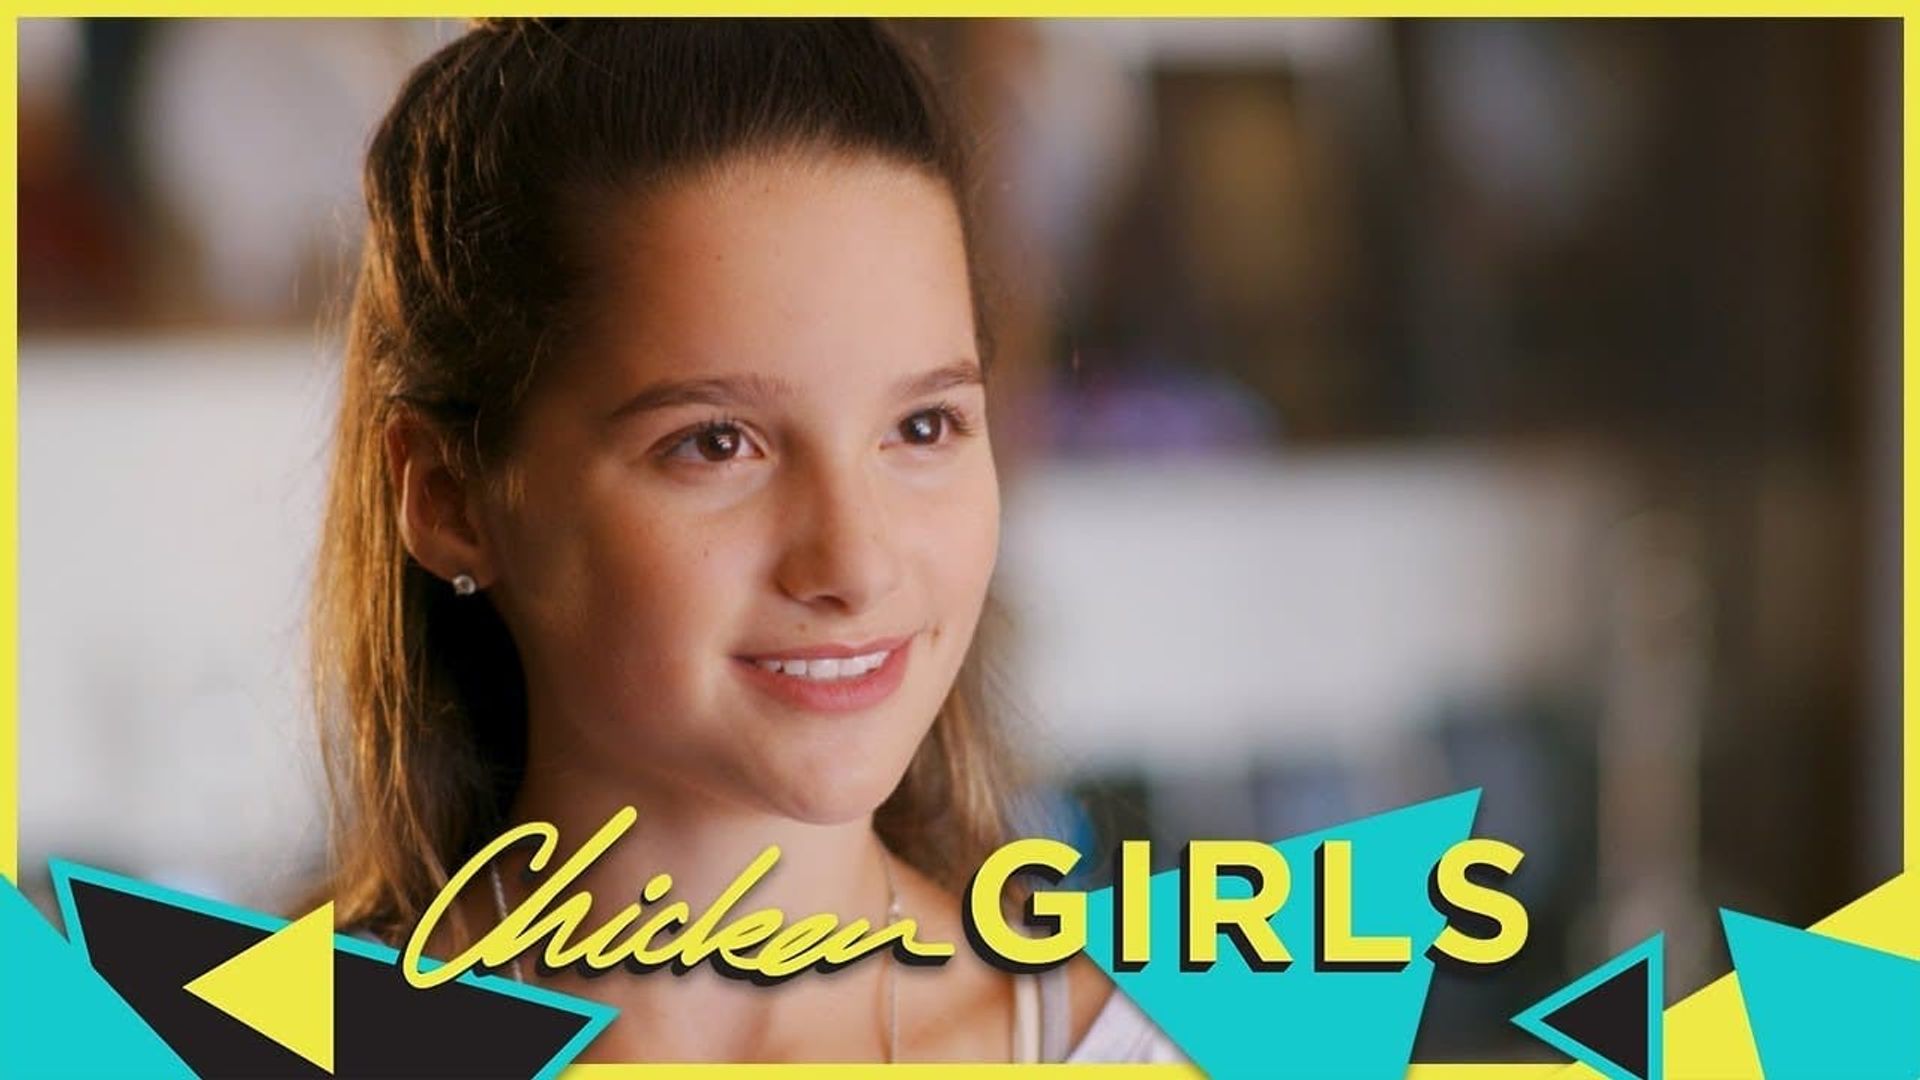 Chicken Girls background